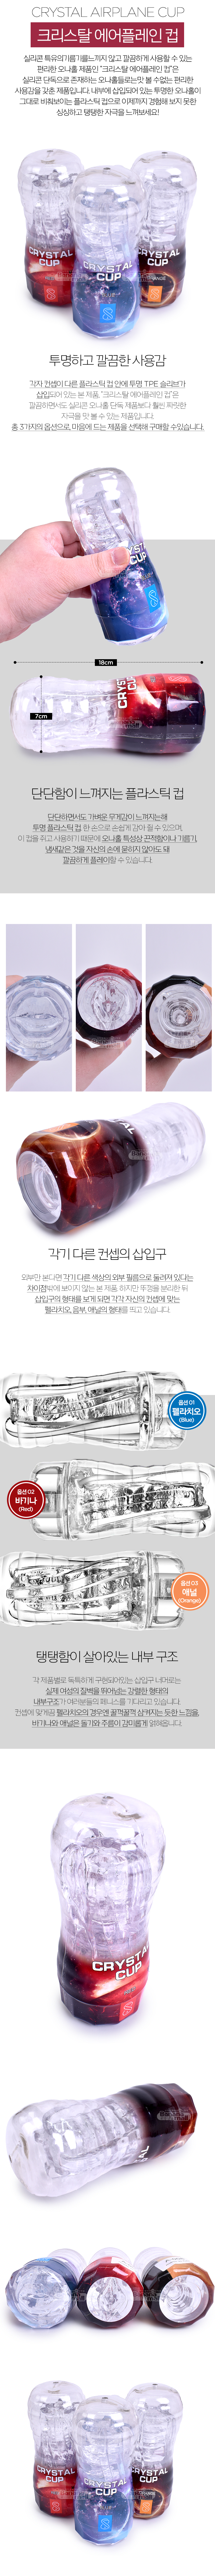 [탄력 홀컵] 크리스탈 에어플레인 컵(Crystal Airplane Cup)